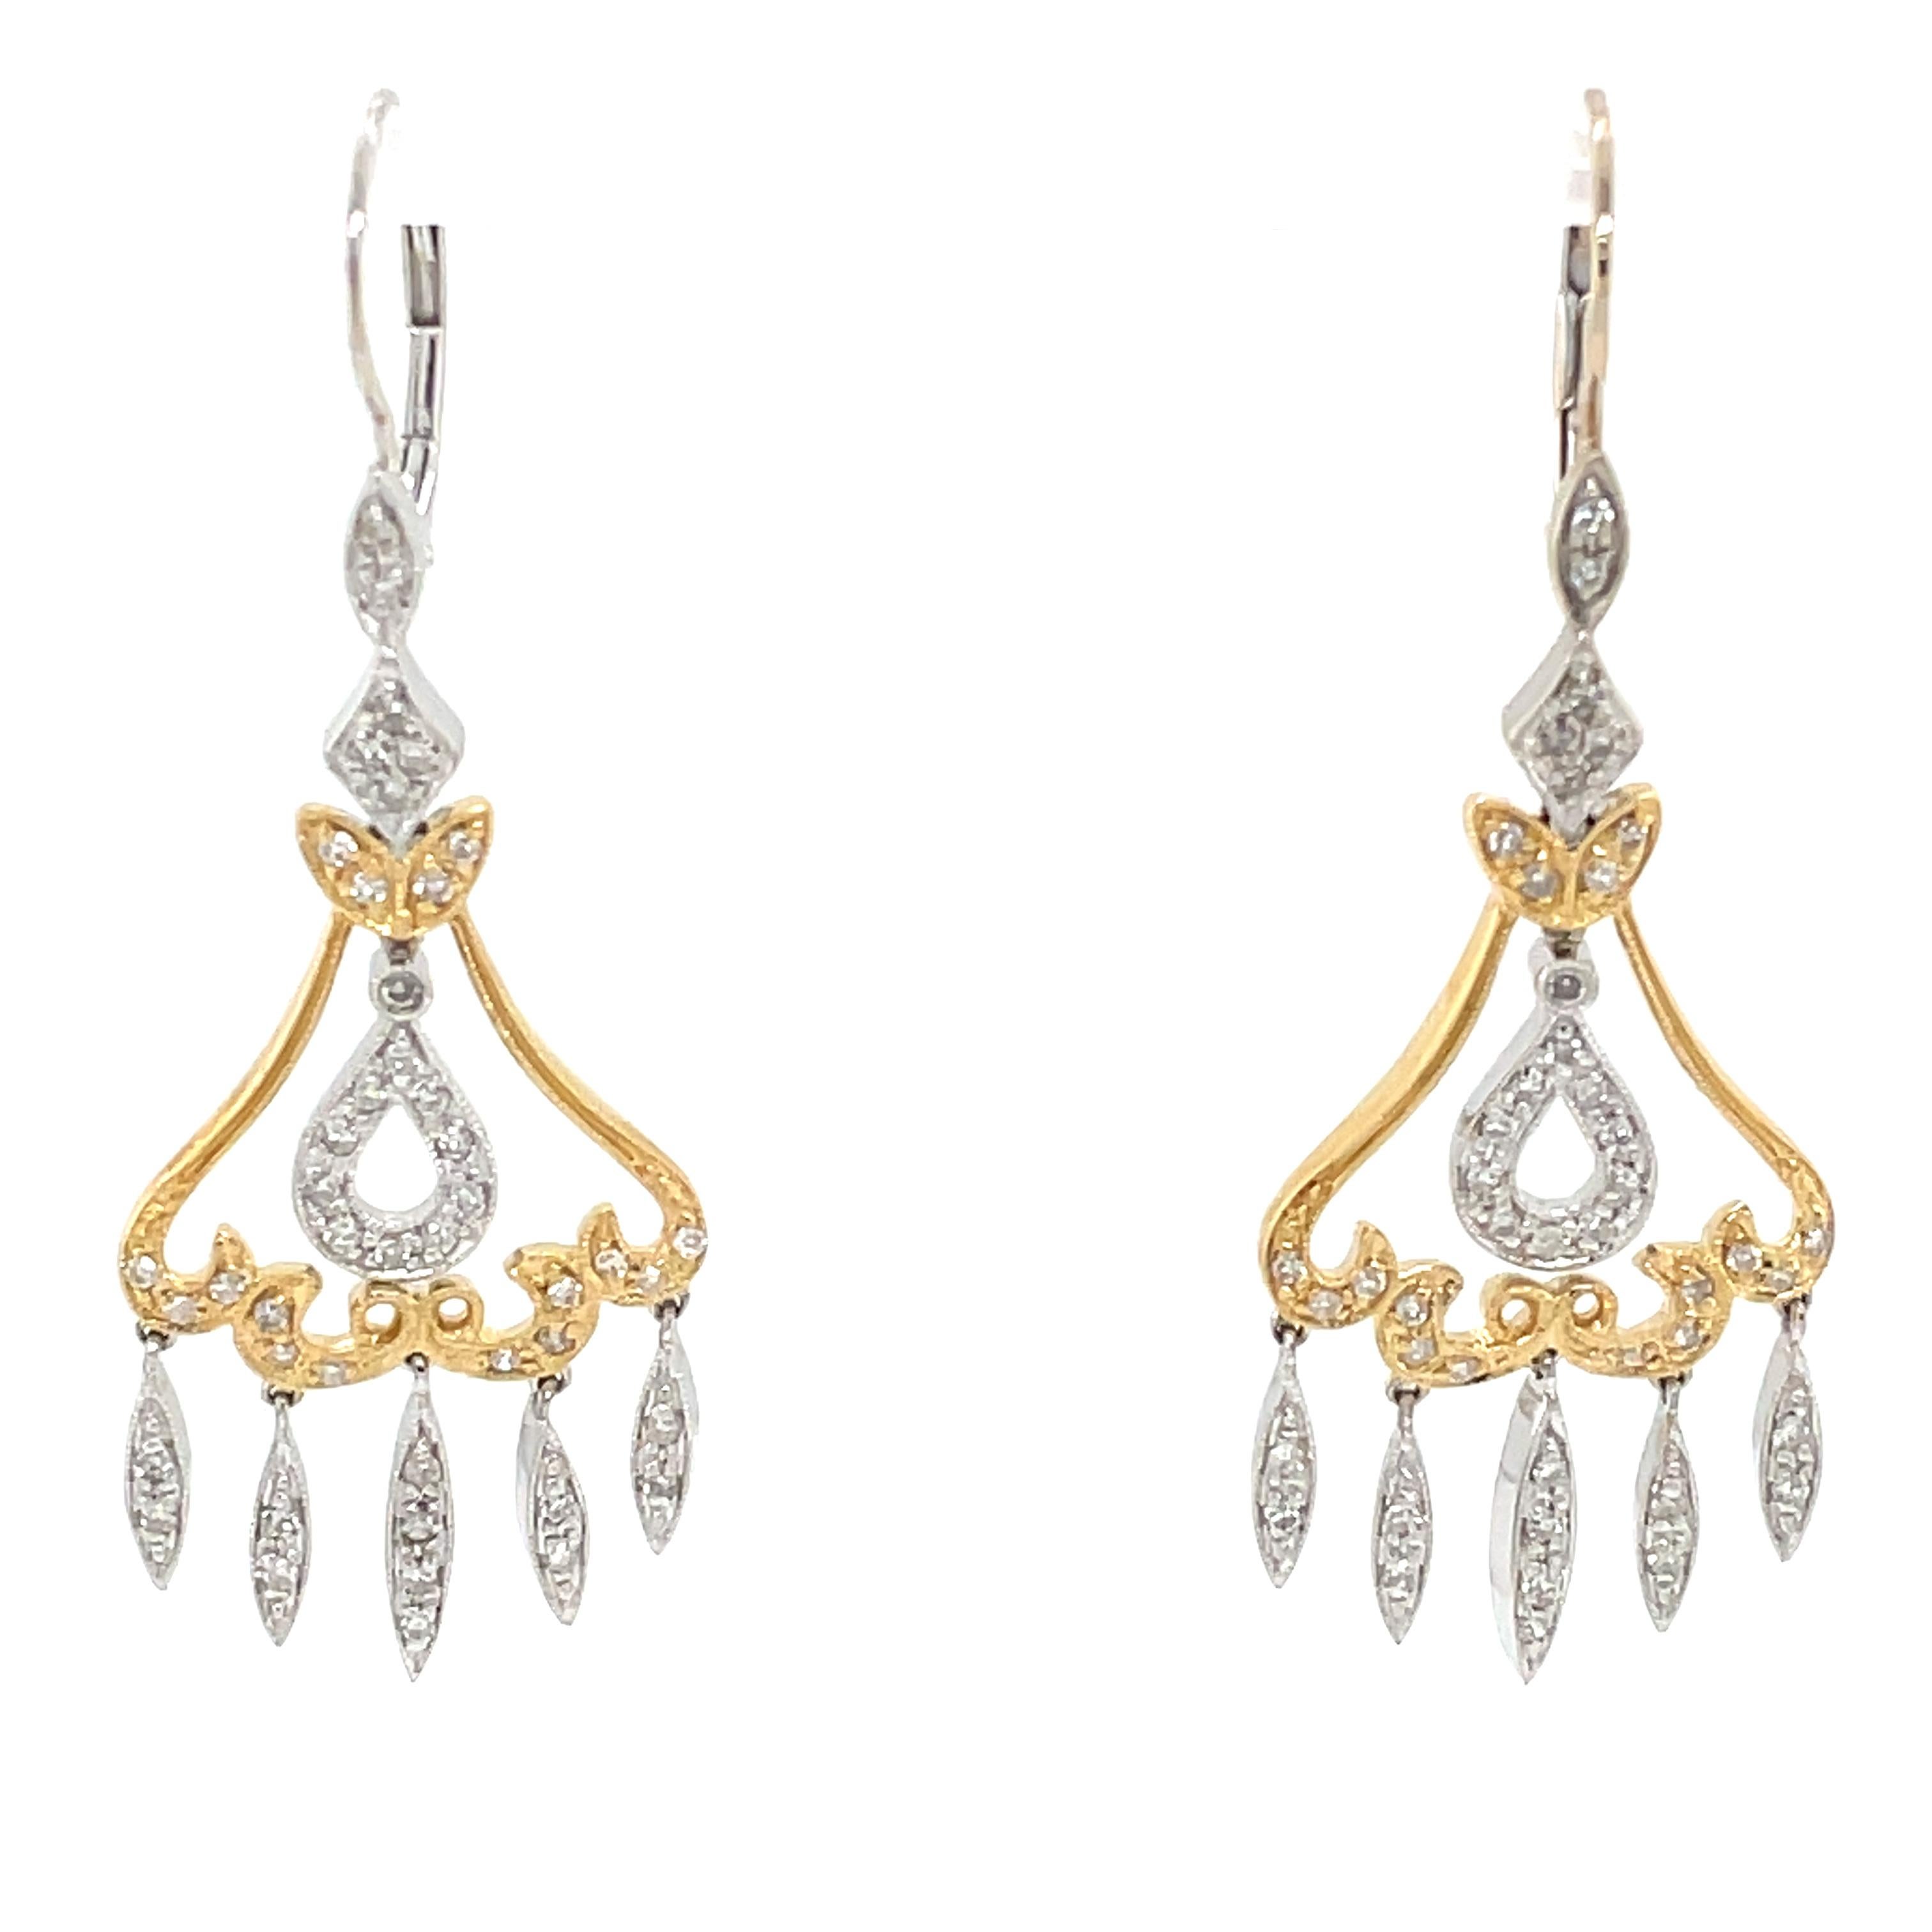 chandelier earrings light up